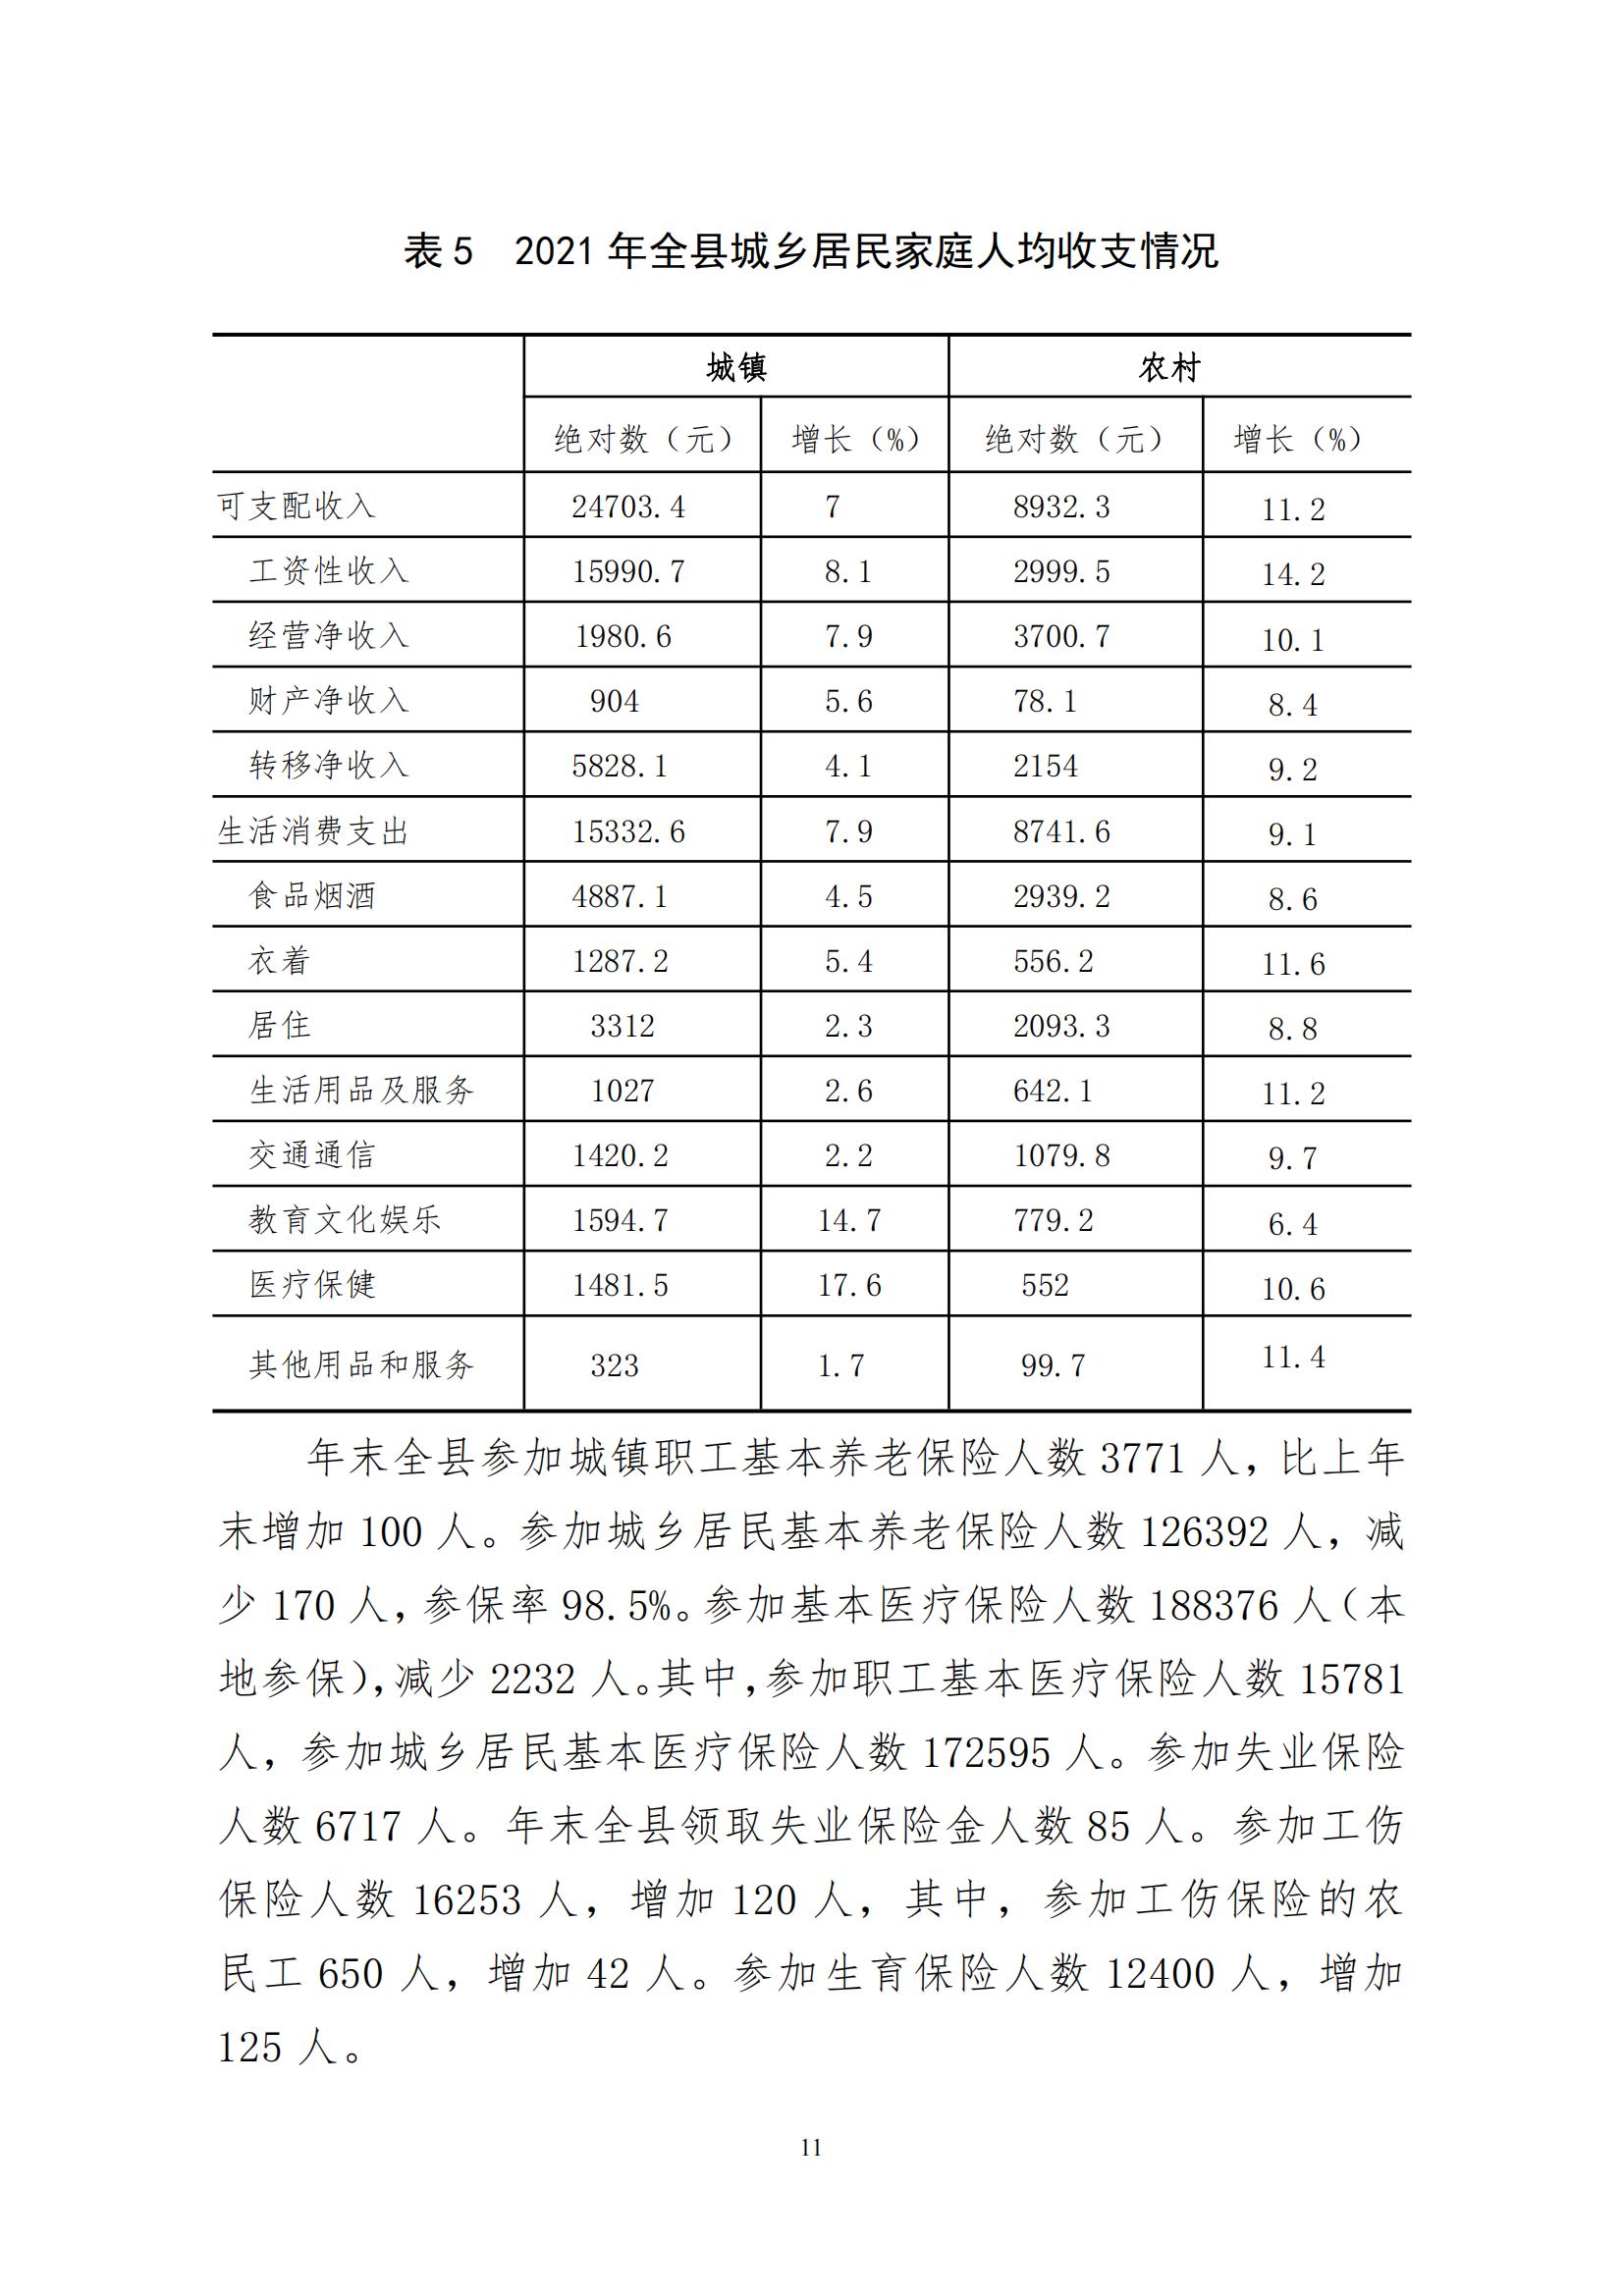 2021年永靖县国民经济和社会发展统计公报_10.jpg